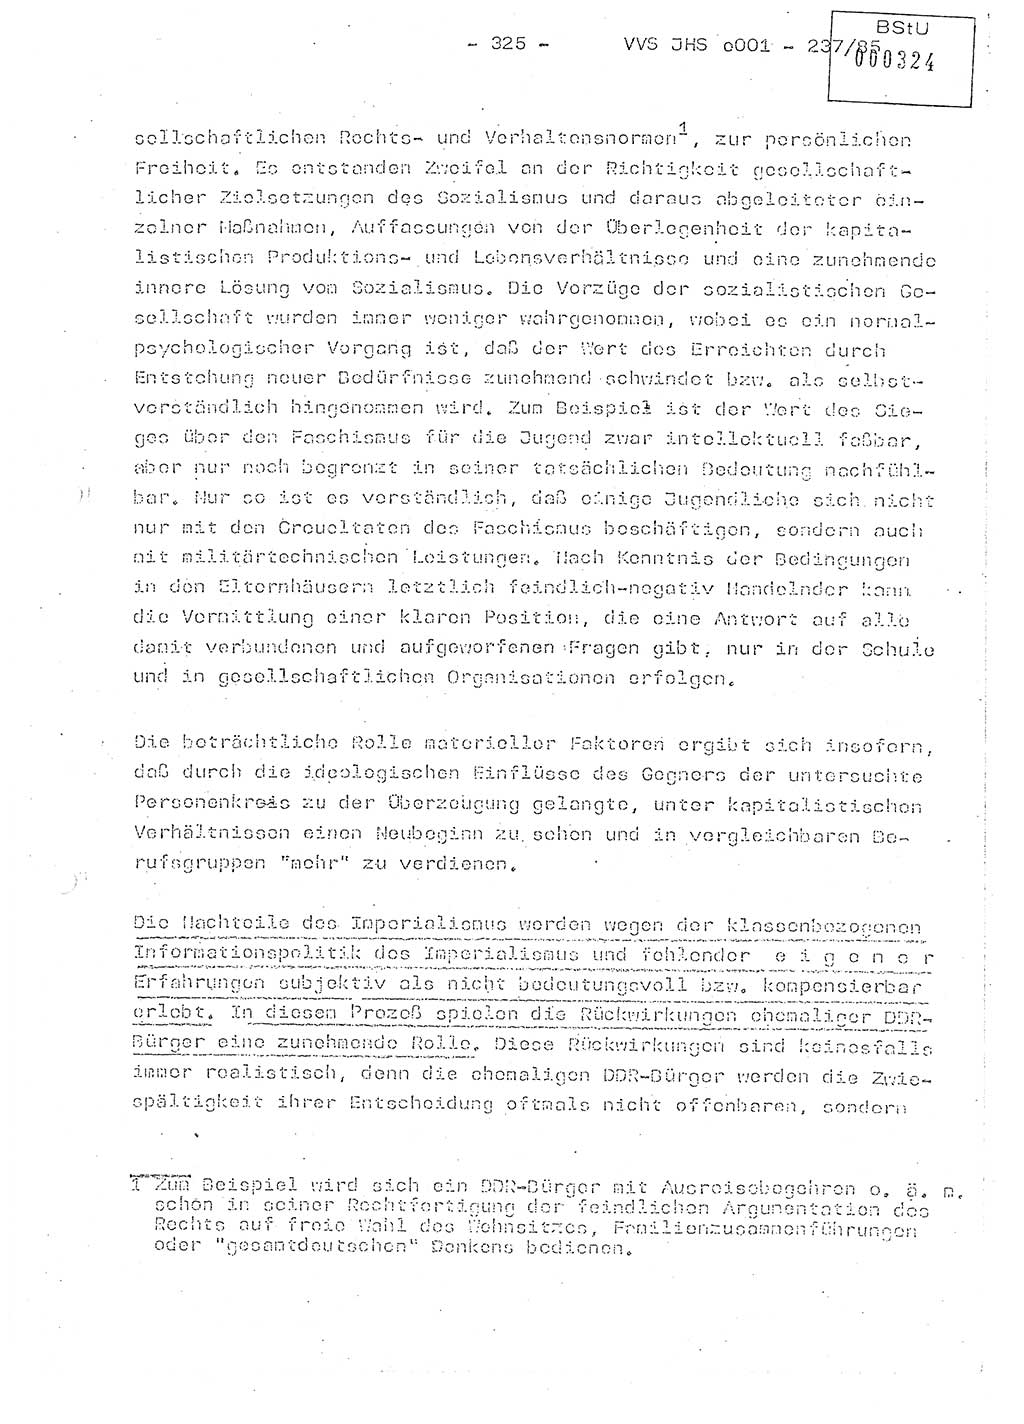 Dissertation Oberstleutnant Peter Jakulski (JHS), Oberstleutnat Christian Rudolph (HA Ⅸ), Major Horst Böttger (ZMD), Major Wolfgang Grüneberg (JHS), Major Albert Meutsch (JHS), Ministerium für Staatssicherheit (MfS) [Deutsche Demokratische Republik (DDR)], Juristische Hochschule (JHS), Vertrauliche Verschlußsache (VVS) o001-237/85, Potsdam 1985, Seite 325 (Diss. MfS DDR JHS VVS o001-237/85 1985, S. 325)